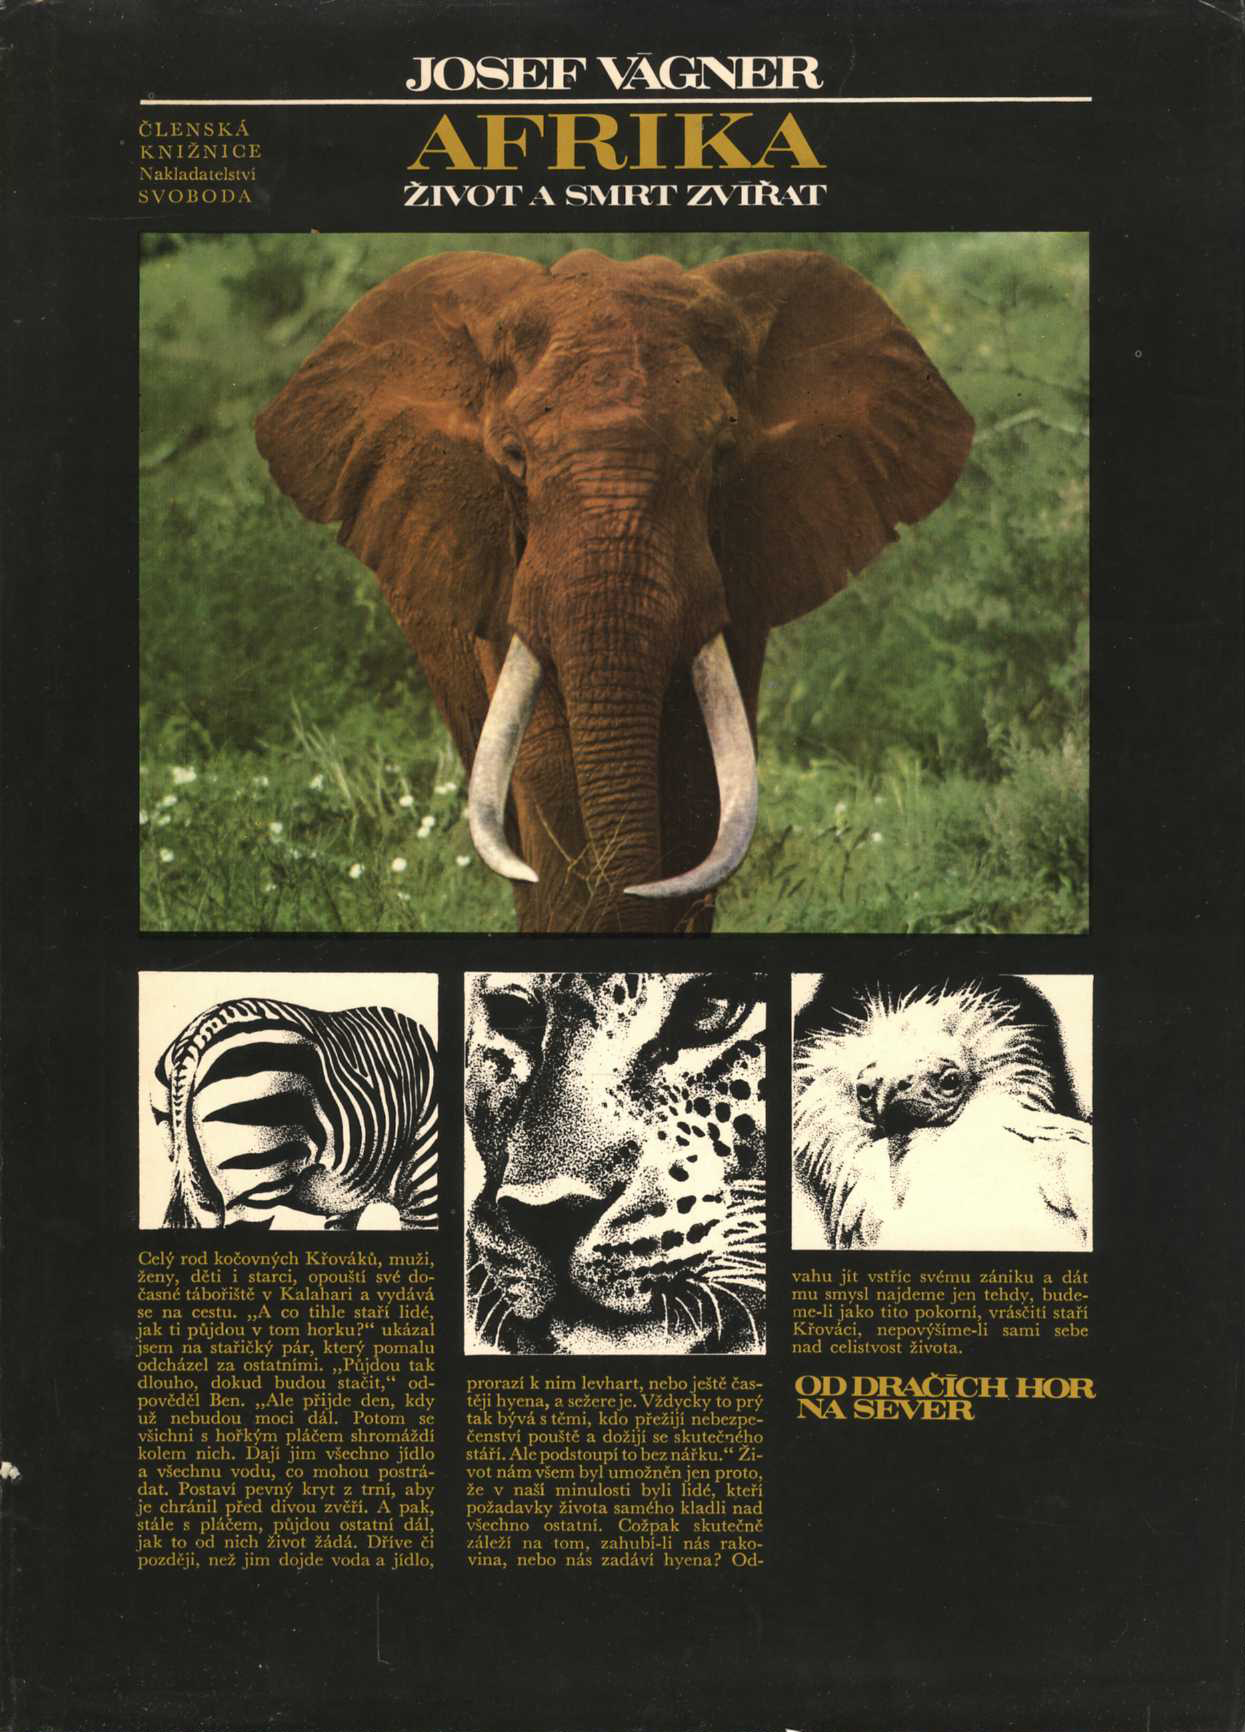 Afrika – Život a smrt zvířat (Josef Vágner)